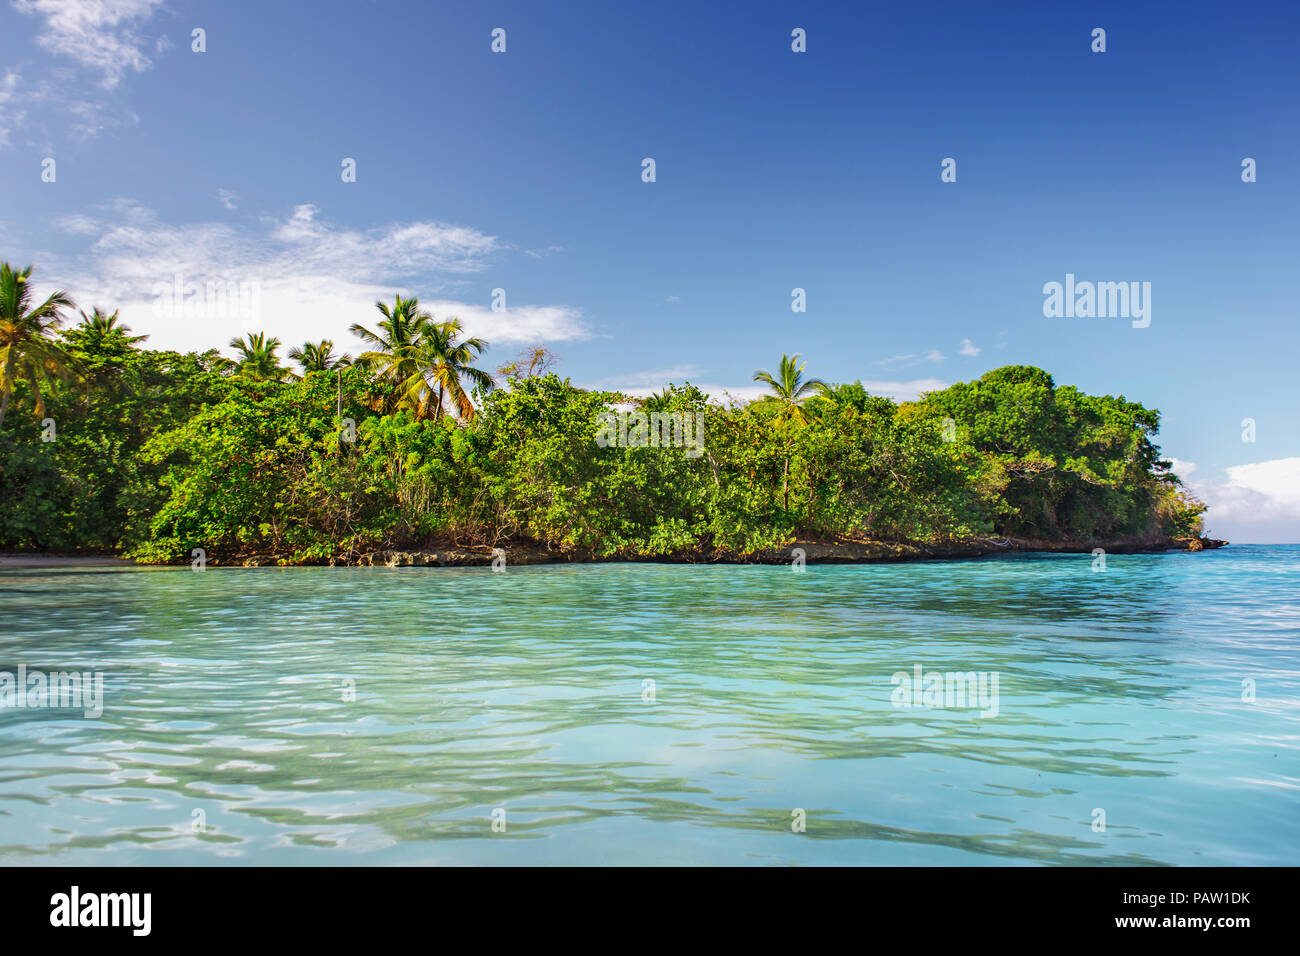 Caribbean scenic landscape, tropical green island in the blue sea. Dominican Republic Stock Photo